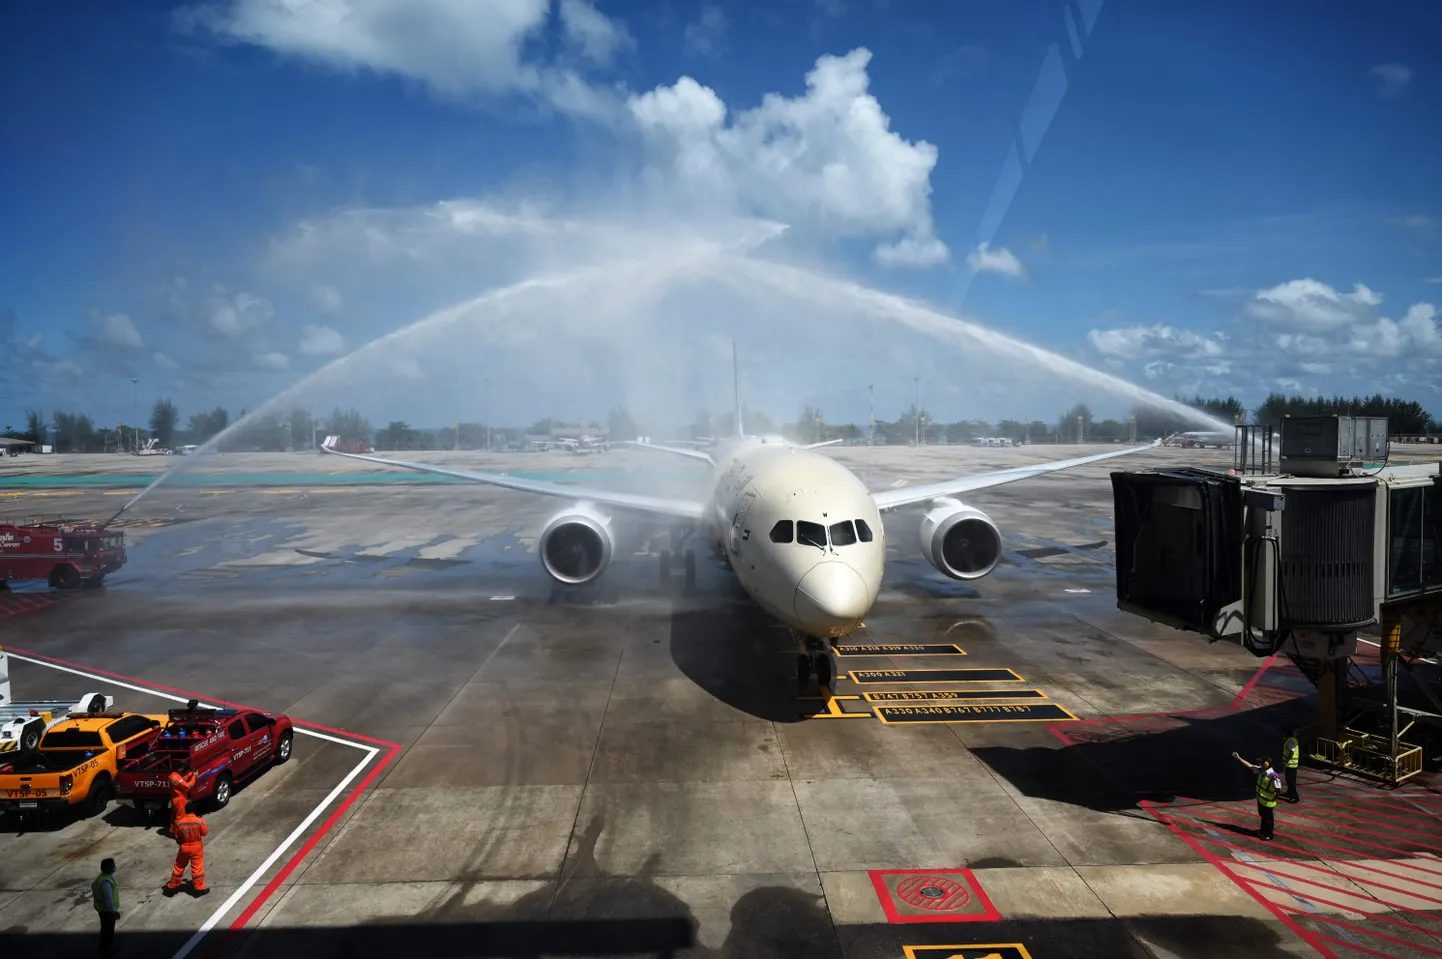 Lennukit esimeste välisturistidega pärast taasavanemist tervitati Phuketi lennuväljal veekahuritega.